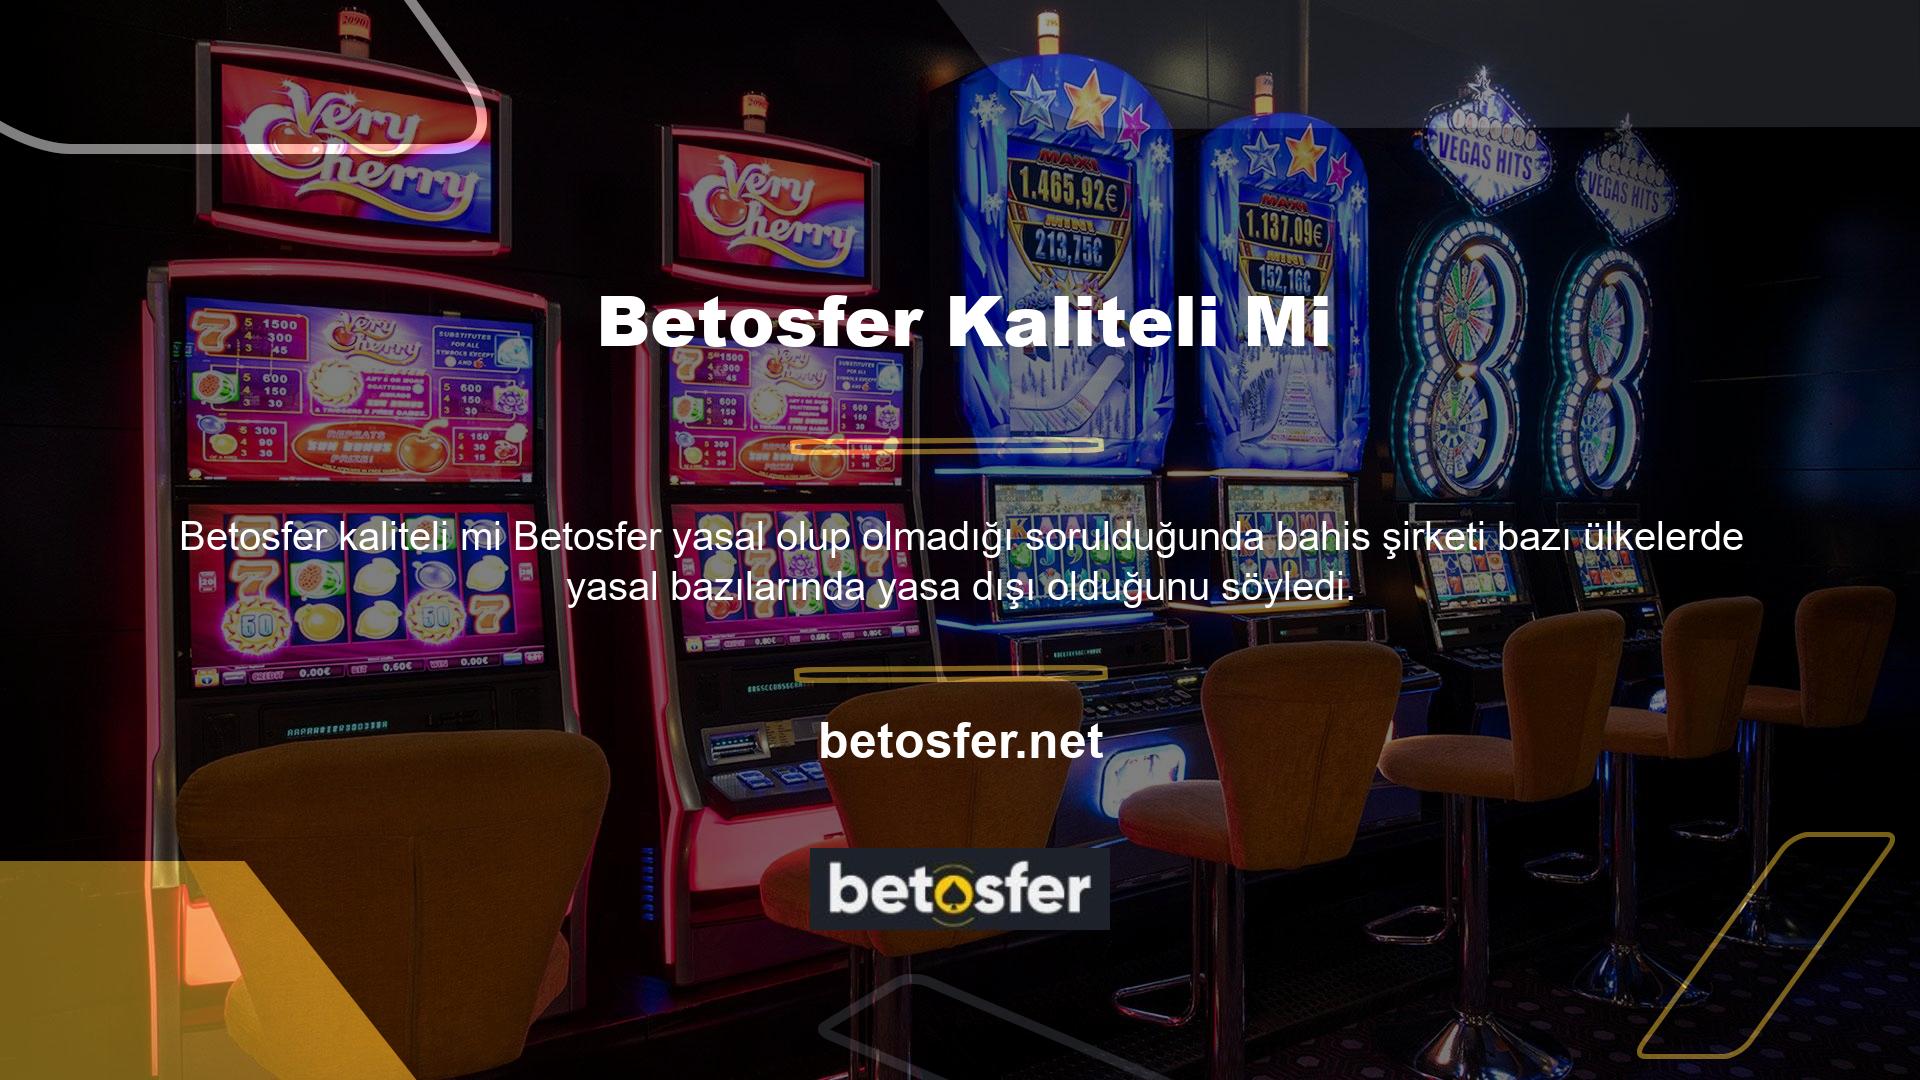 Ülkemizde casino yasak olduğu için Betosfer sadece yasa dışı olarak casino hizmeti verebilmektedir